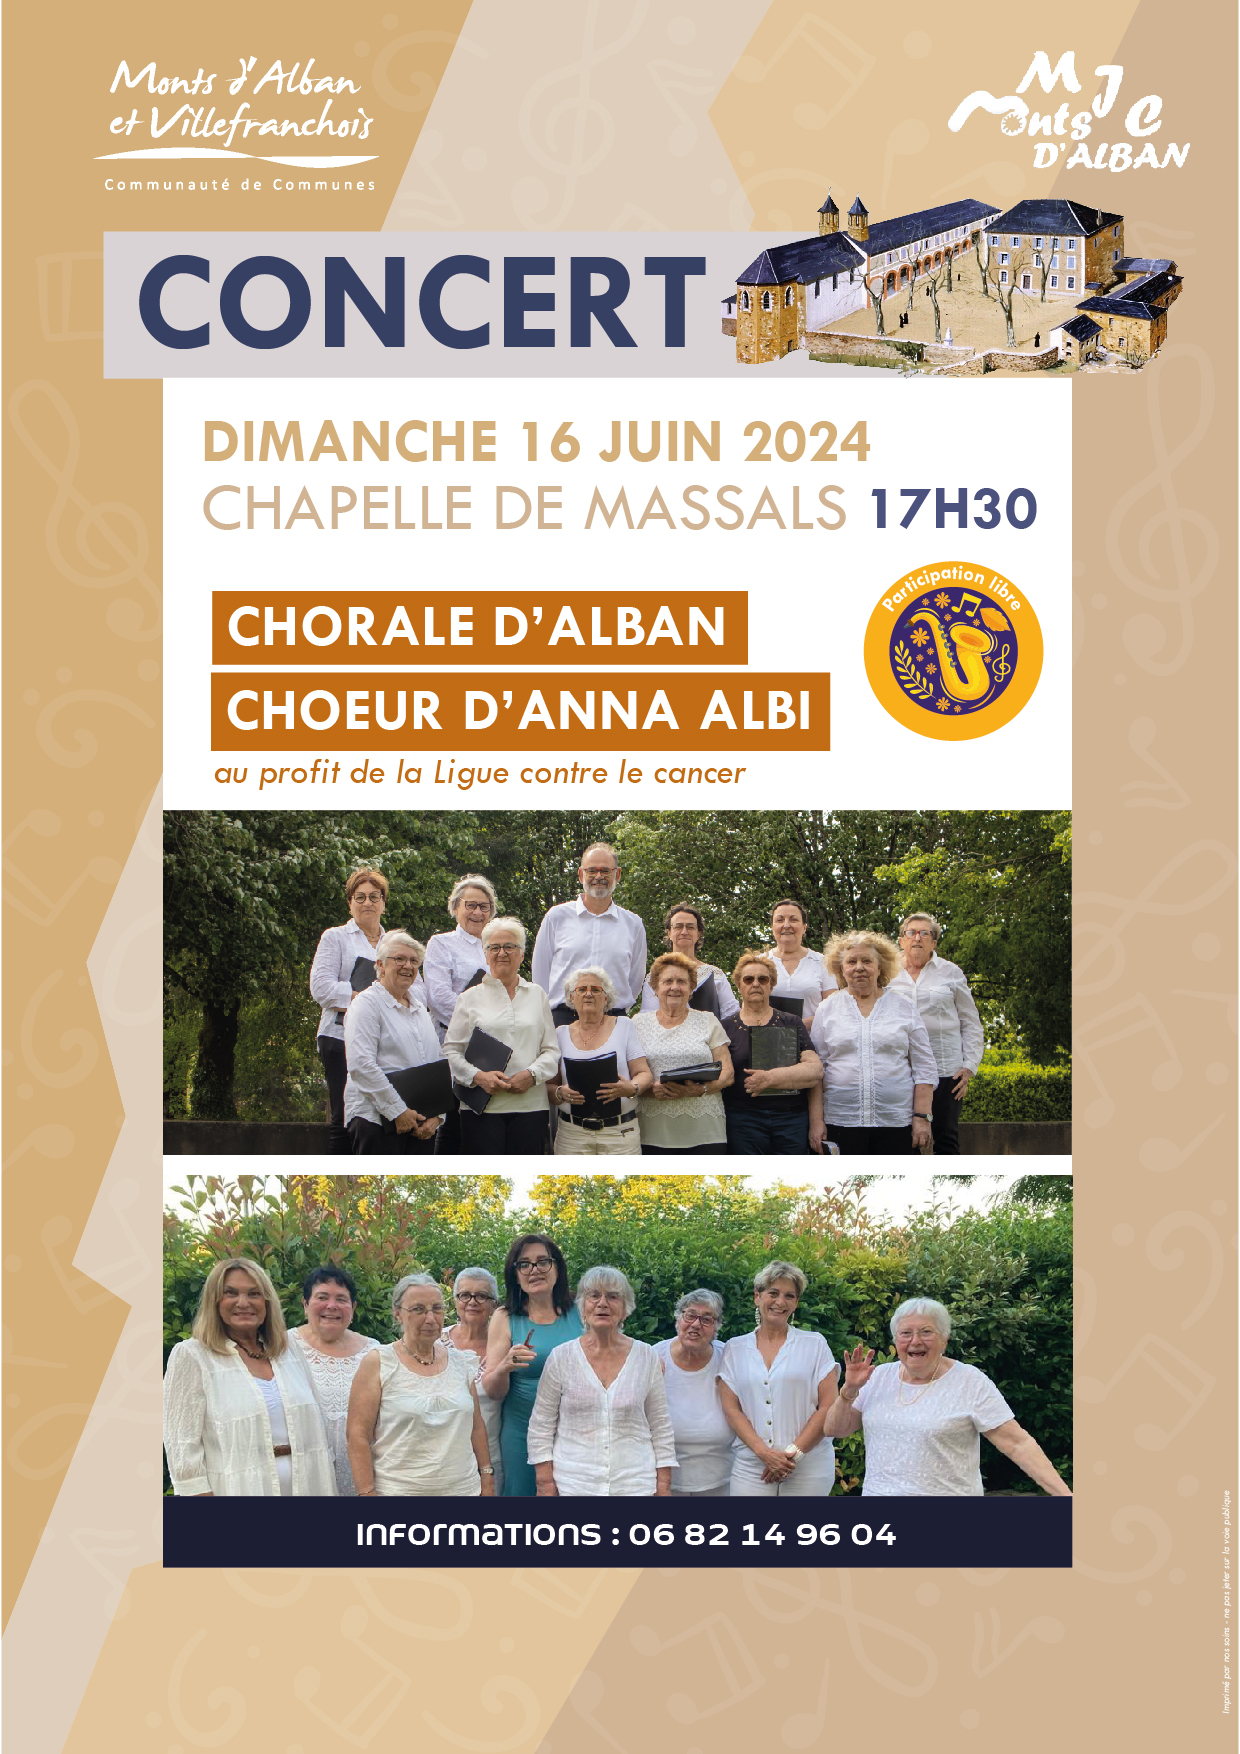 Concert de la chorale d'Alban et du choeur d'Anna d'Albi